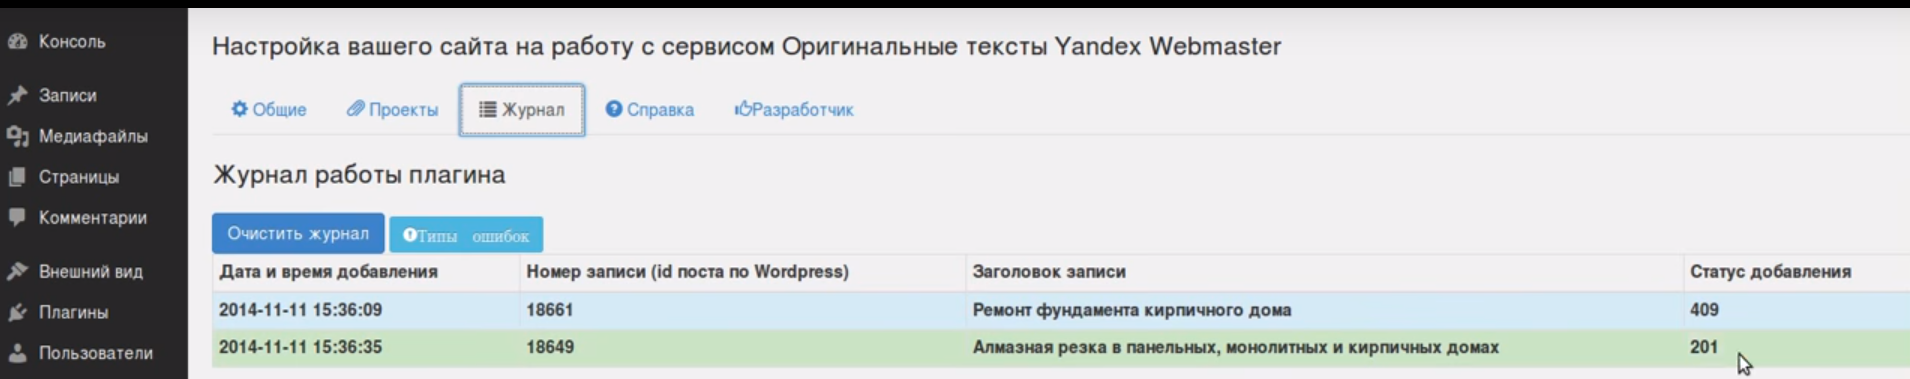 Журнал плагина для Оригинальных текстов Яндекса